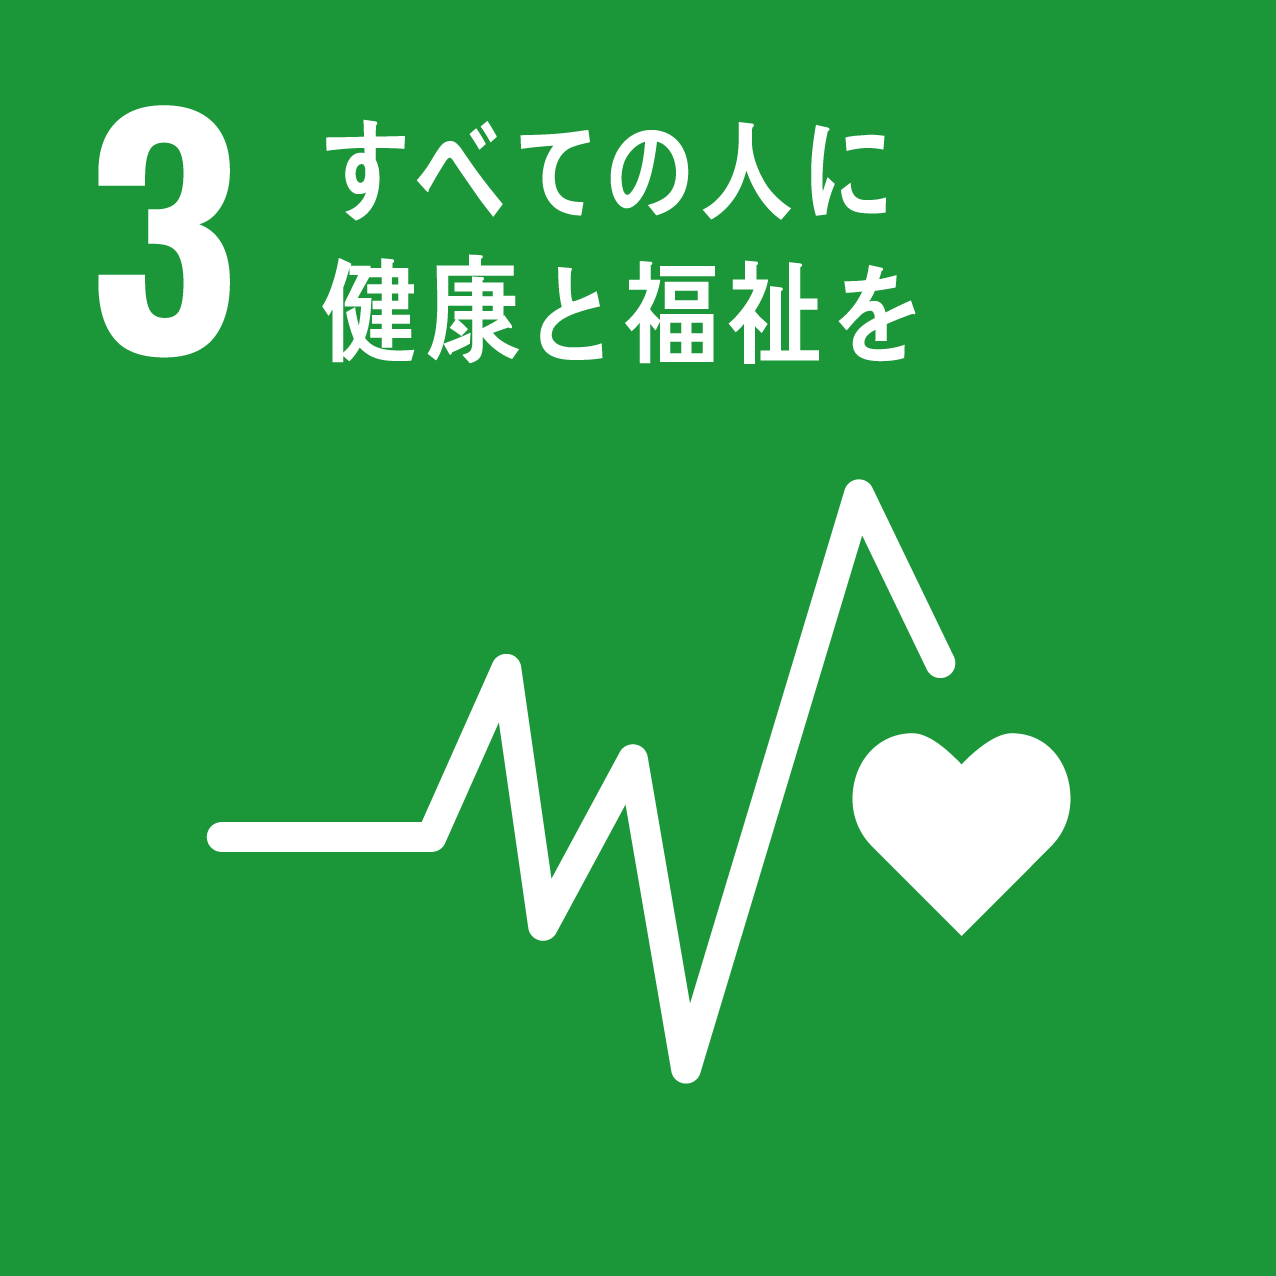 SDGs 目標3 すべての人に健康と福祉を